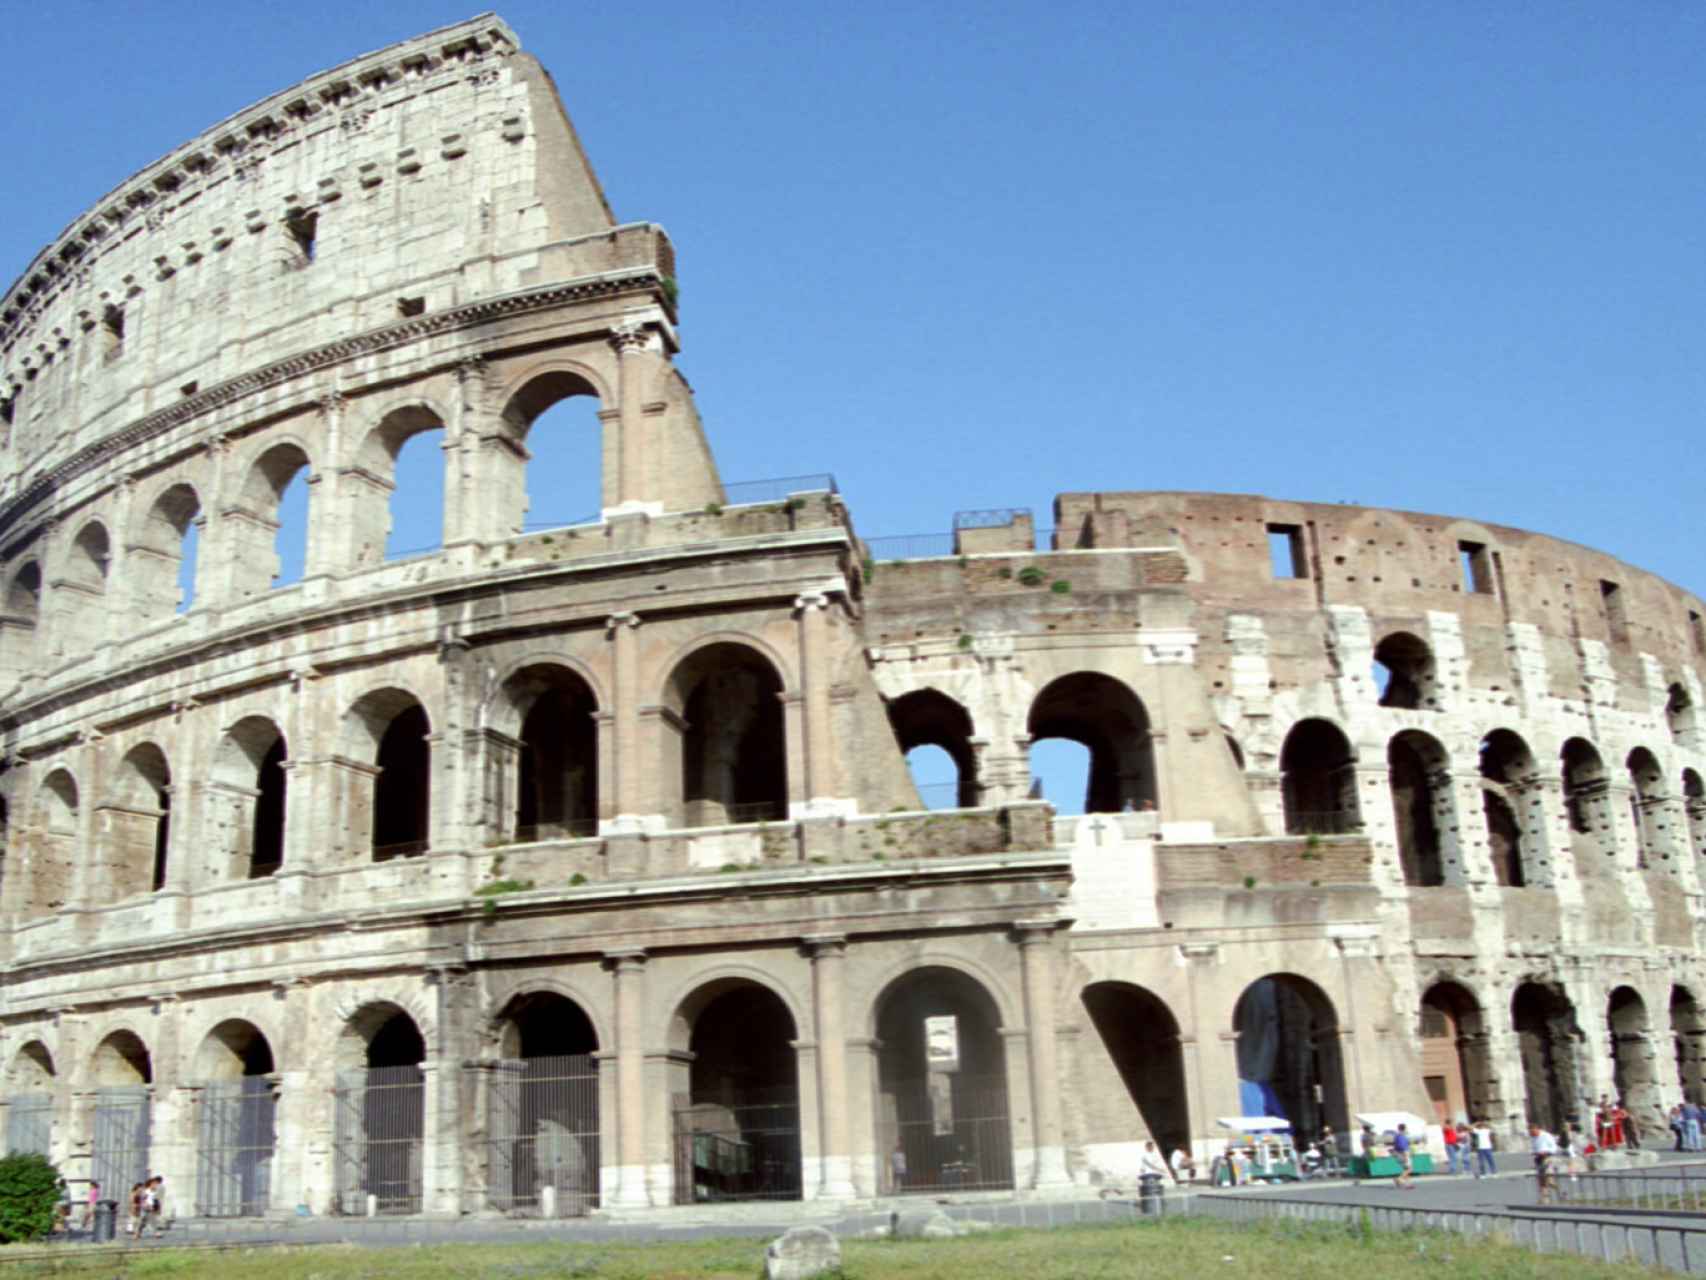 El coliseo romano, una de las arquitecturas vivas después de 2000 años.